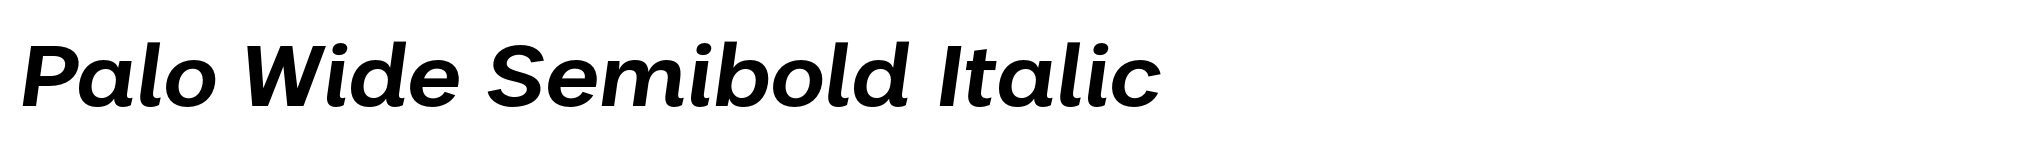 Palo Wide Semibold Italic image